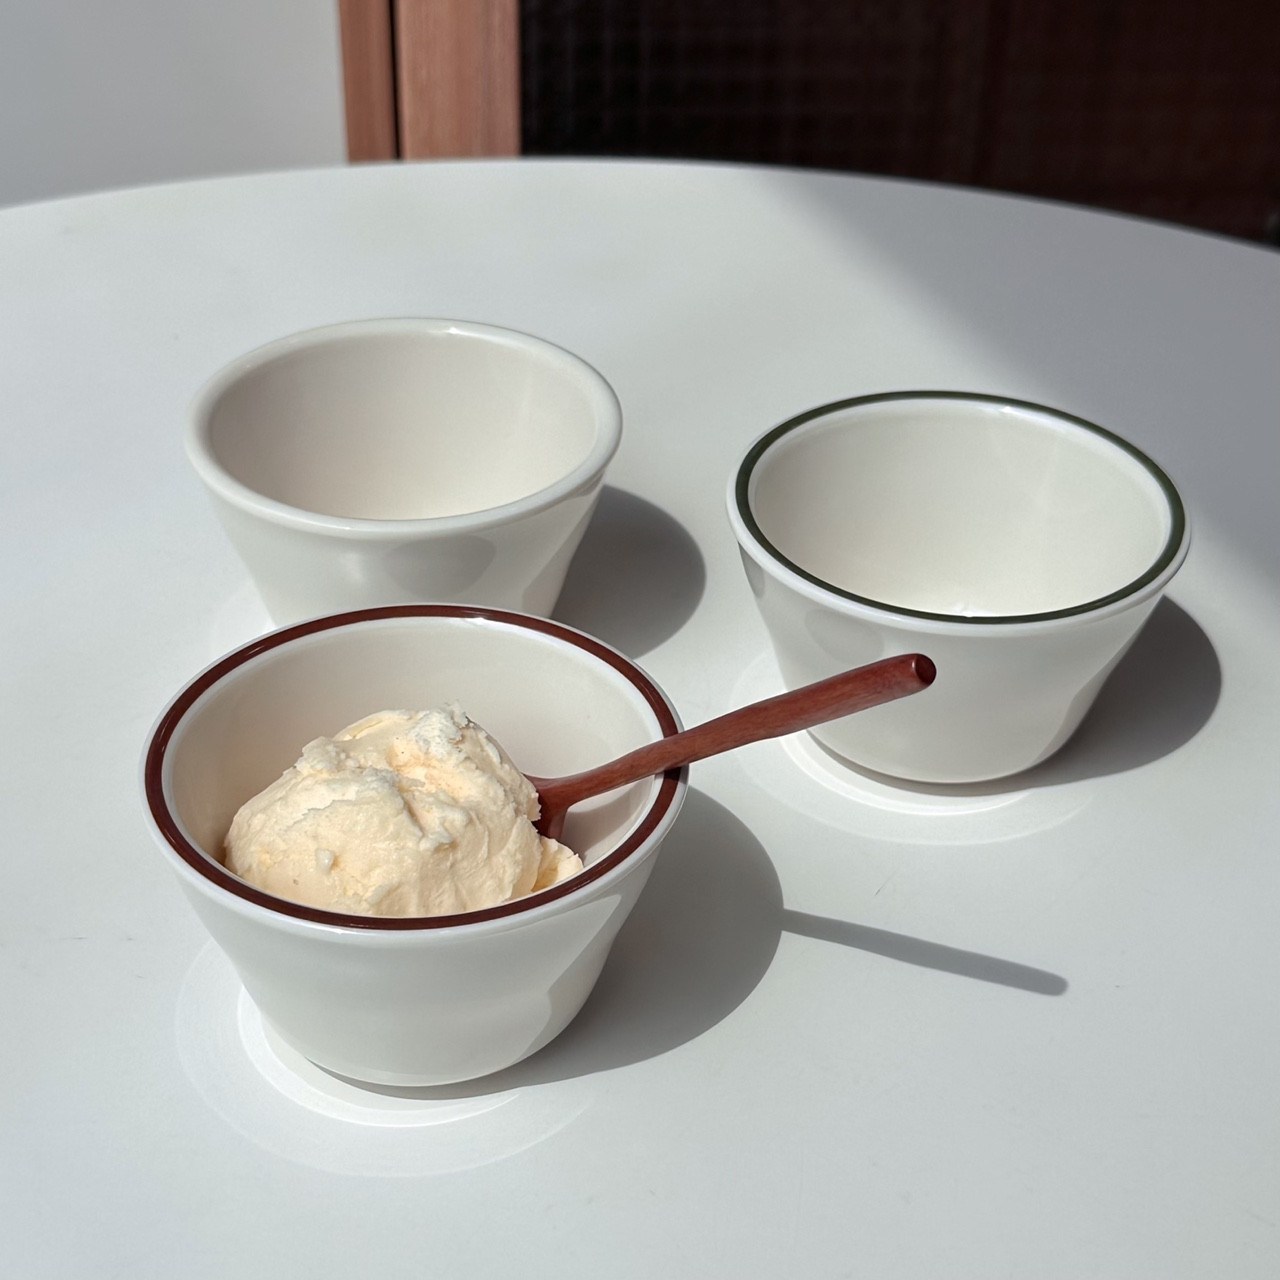 [이스톤라인 공기, 대접] 깨지지 않는 멜라민 그릇세트 신혼부부 식당 요거트볼 아이스크림